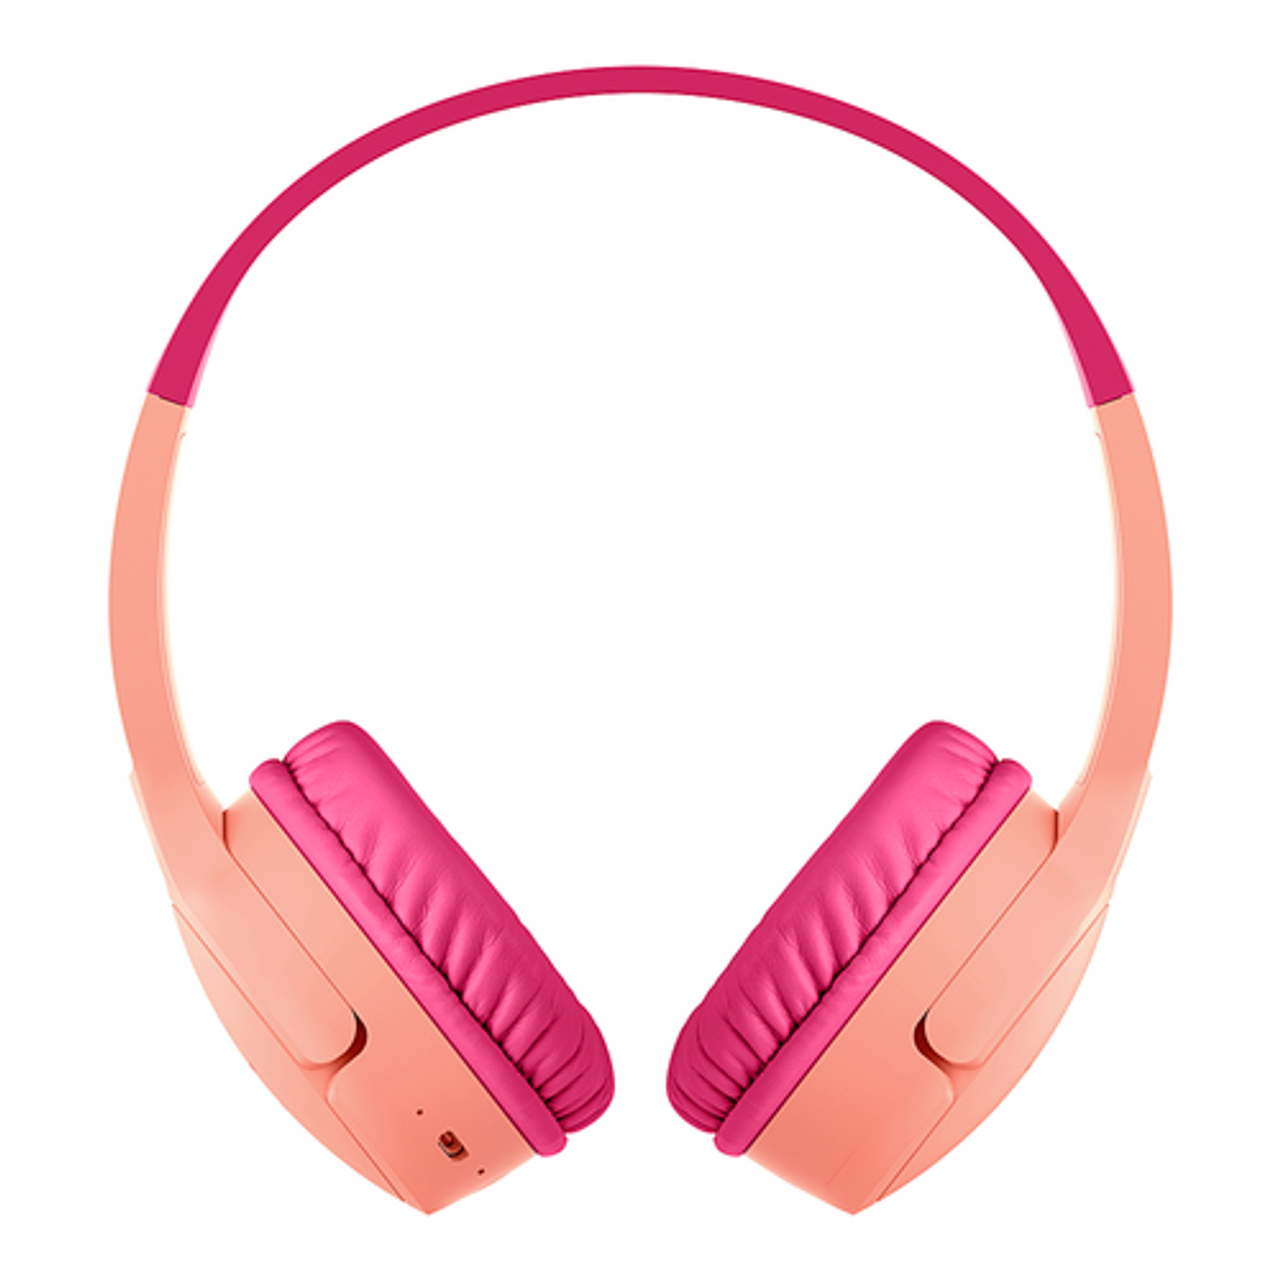 Belkin - Sound Form Mini Wireless On-Ear Headphones for Kid - Pink